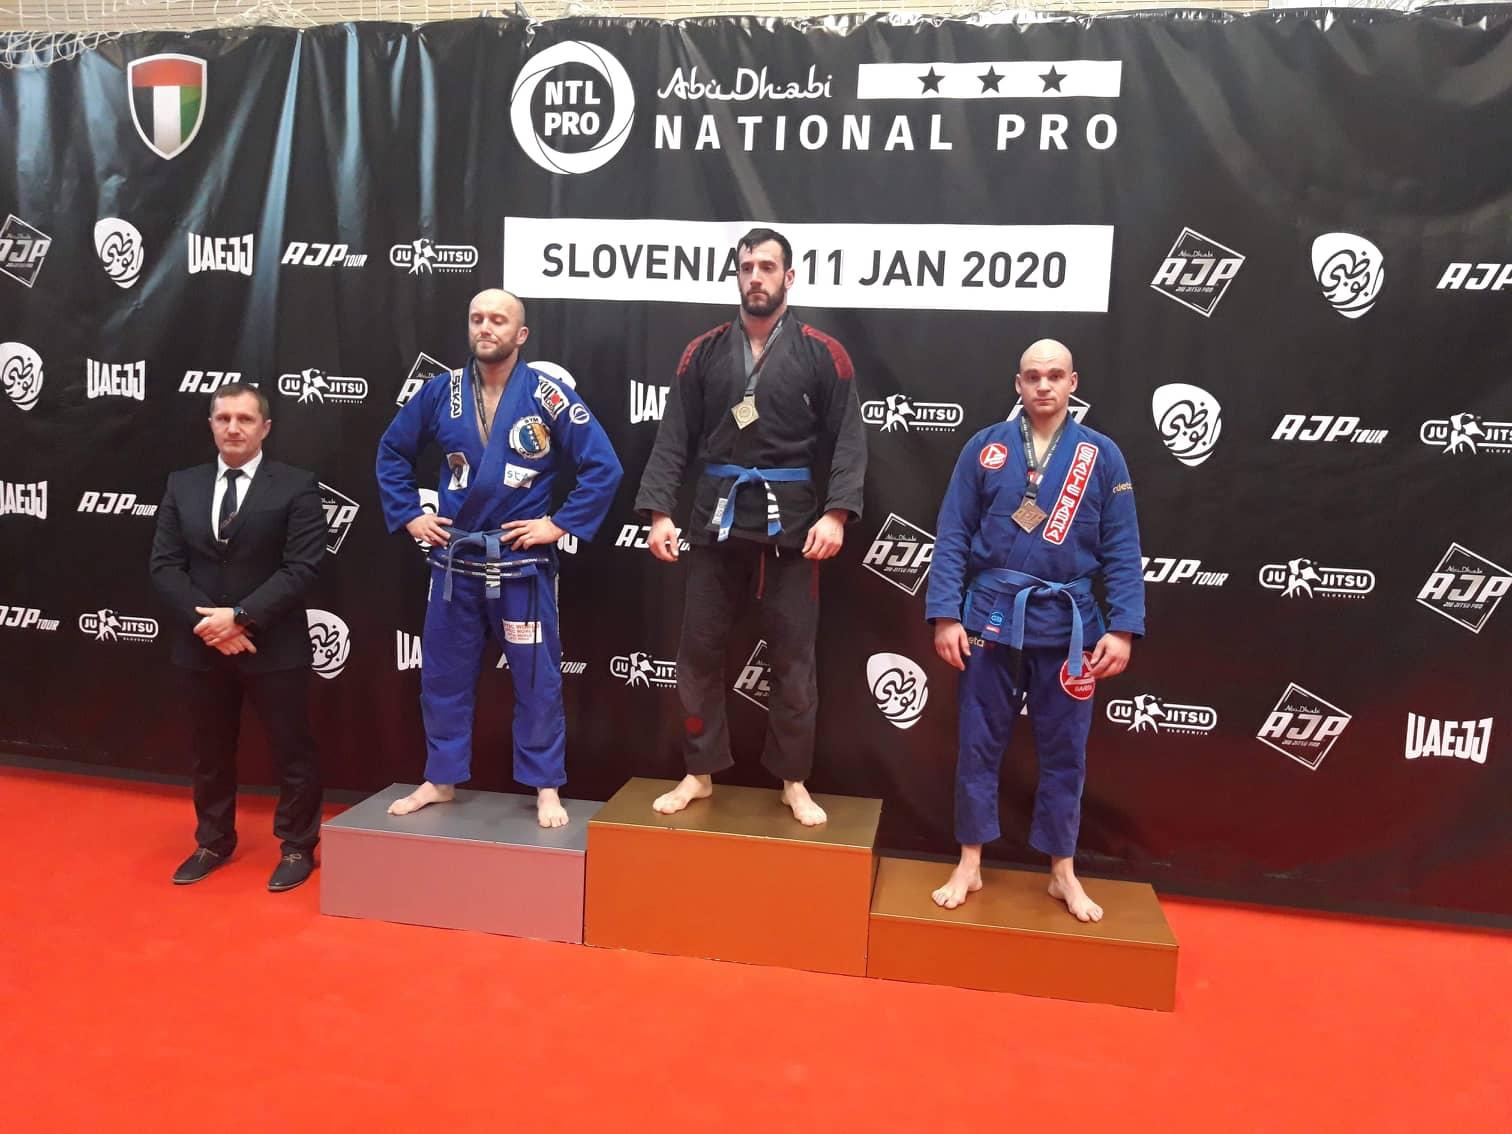 Zuka i Kešmer osvojili nove medalje za BiH na AJP Jiu-jitsu turniru u Sloveniji